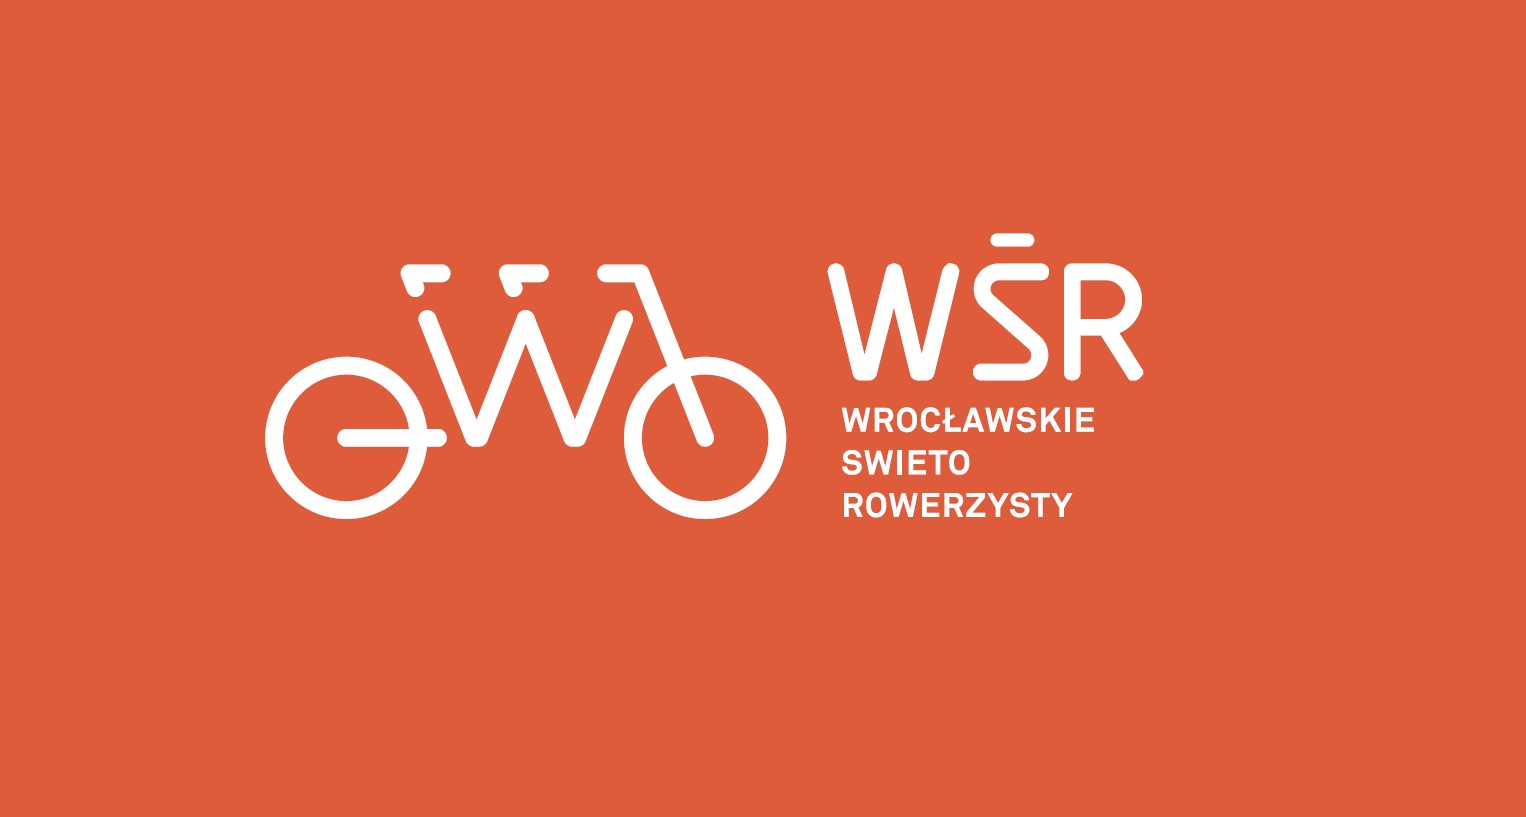 Wrocławskie Święto Rowerzysty